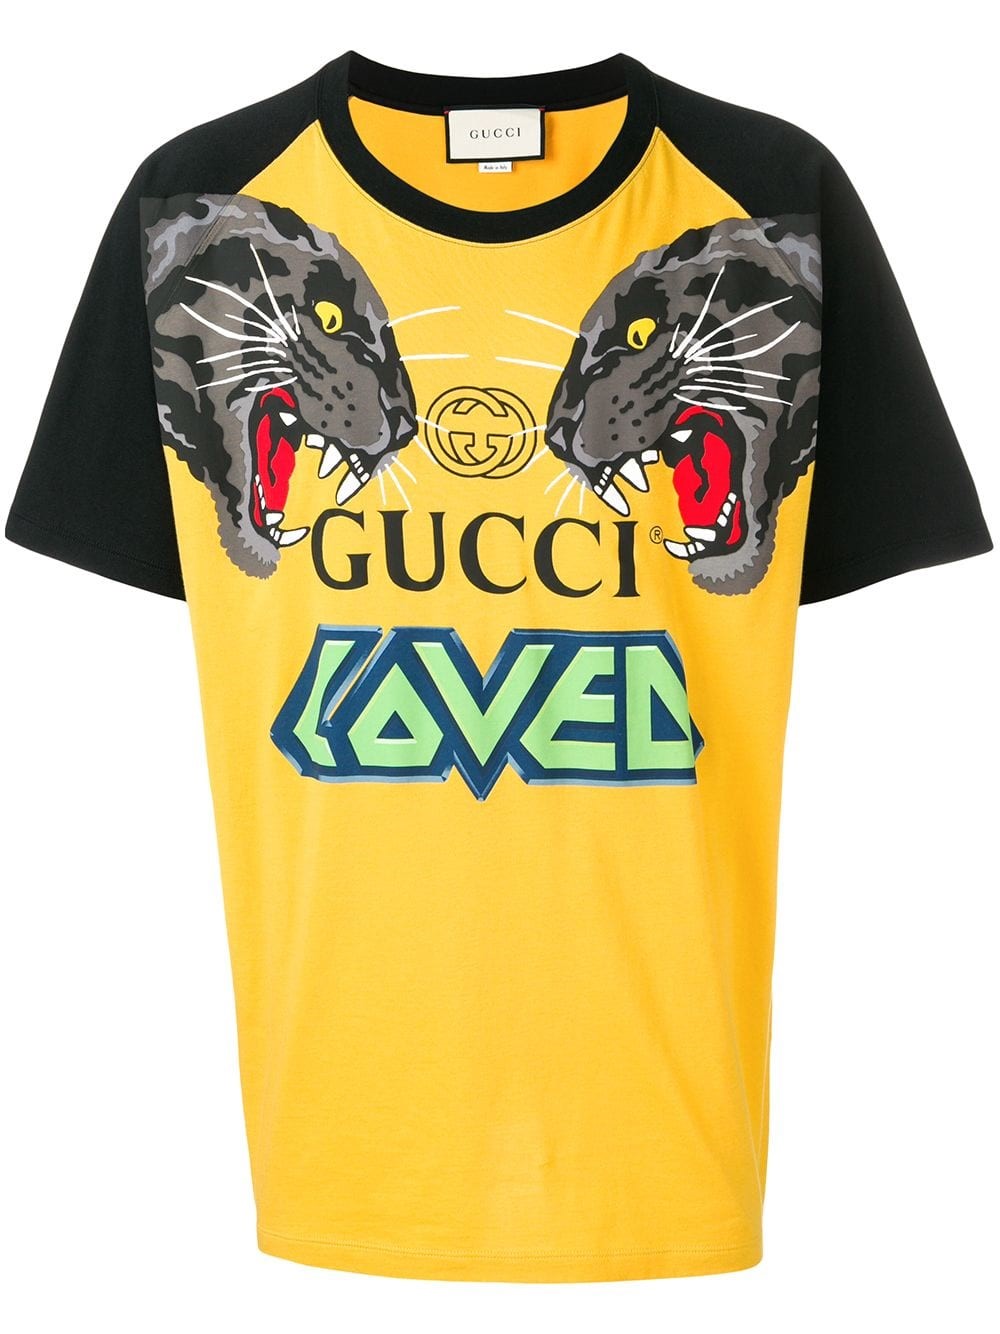 Gucci t shirt nicht original